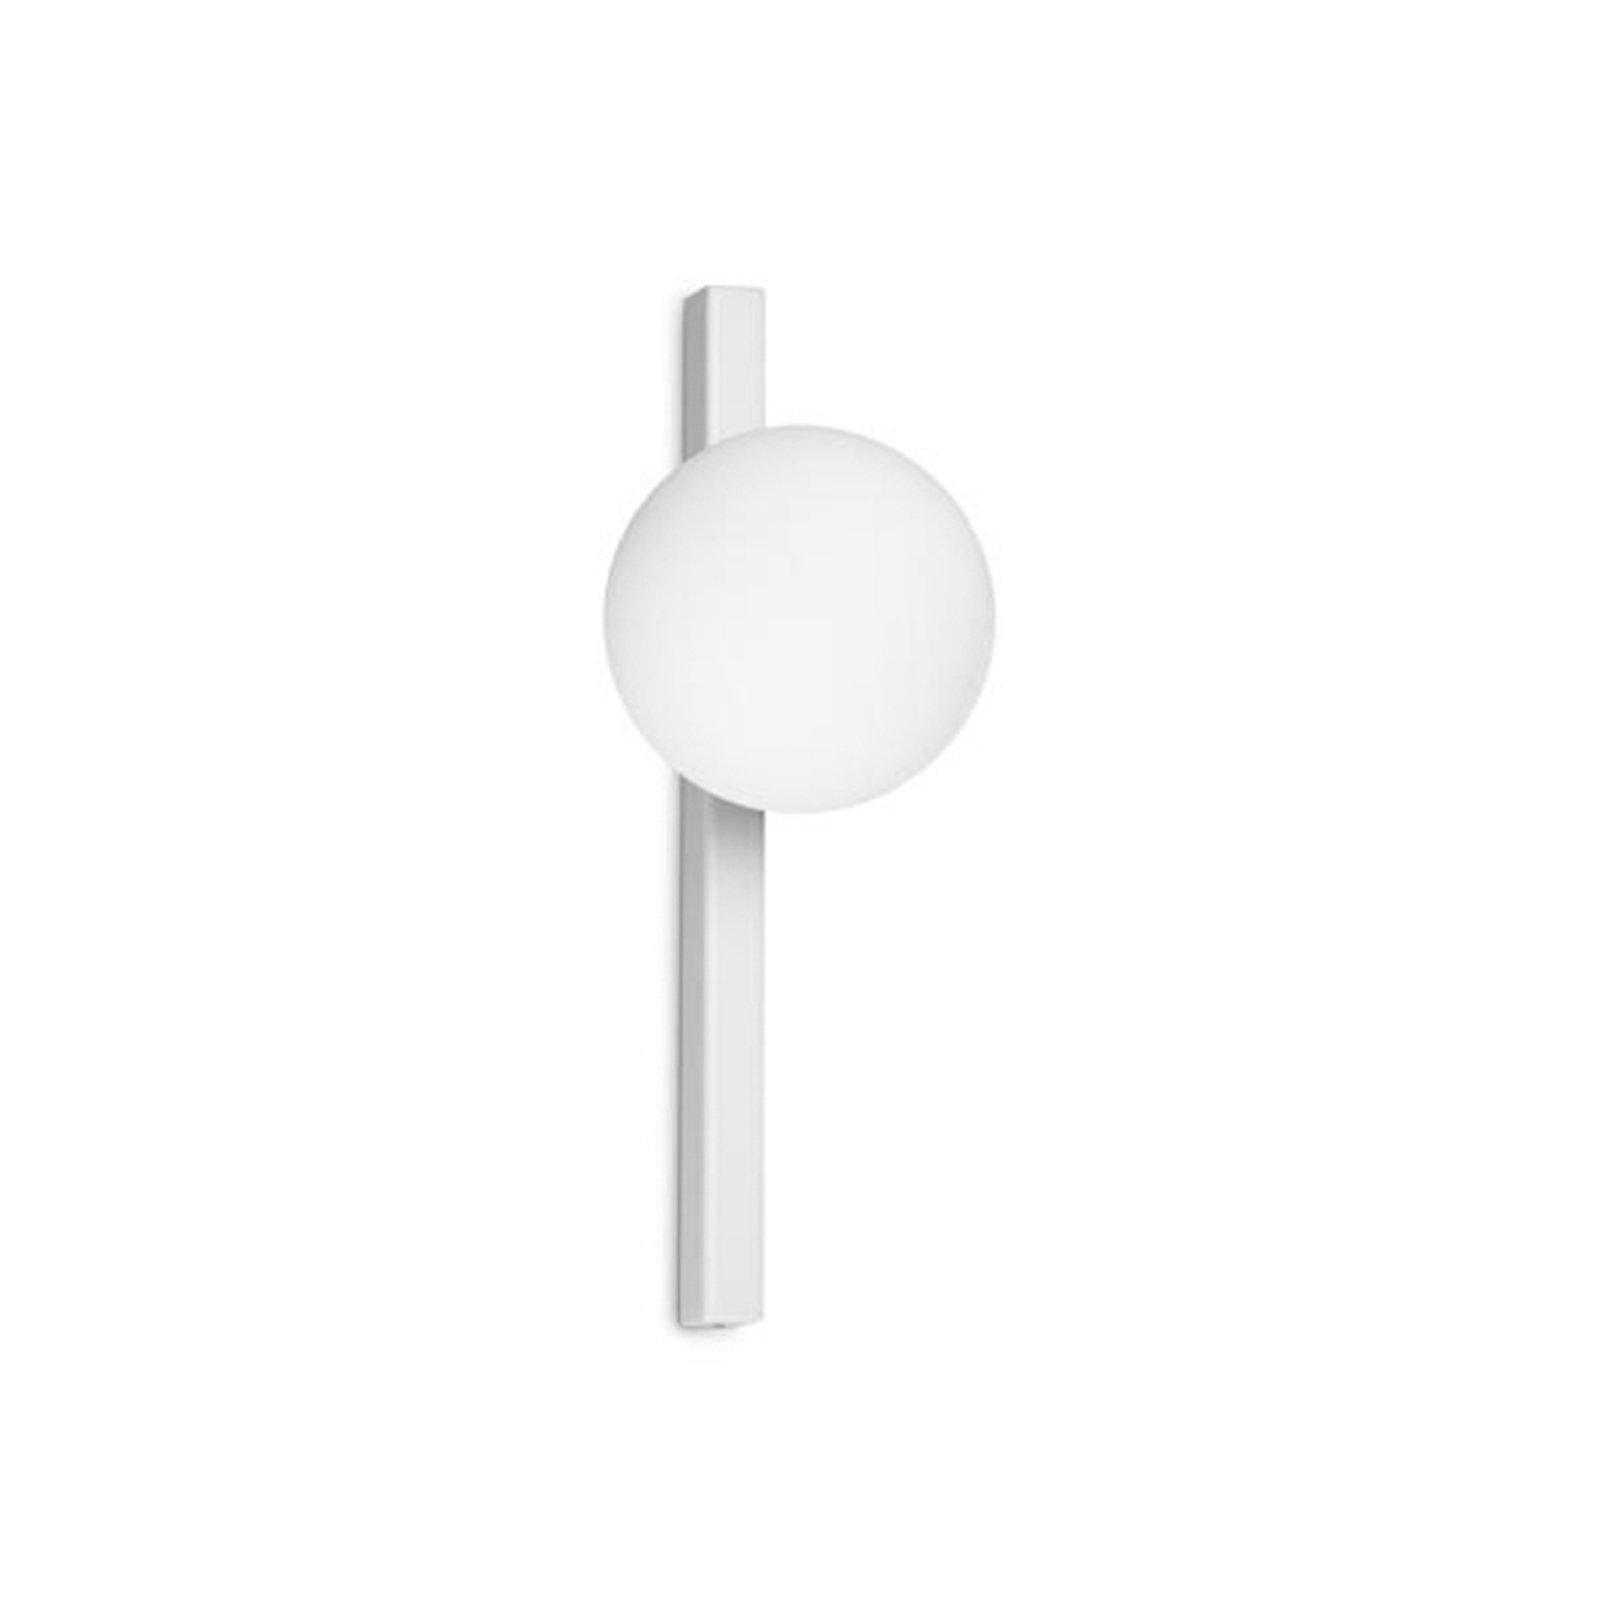 Ideal Lux aplique Binomio, branco, 1 lâmpada, metal, vidro